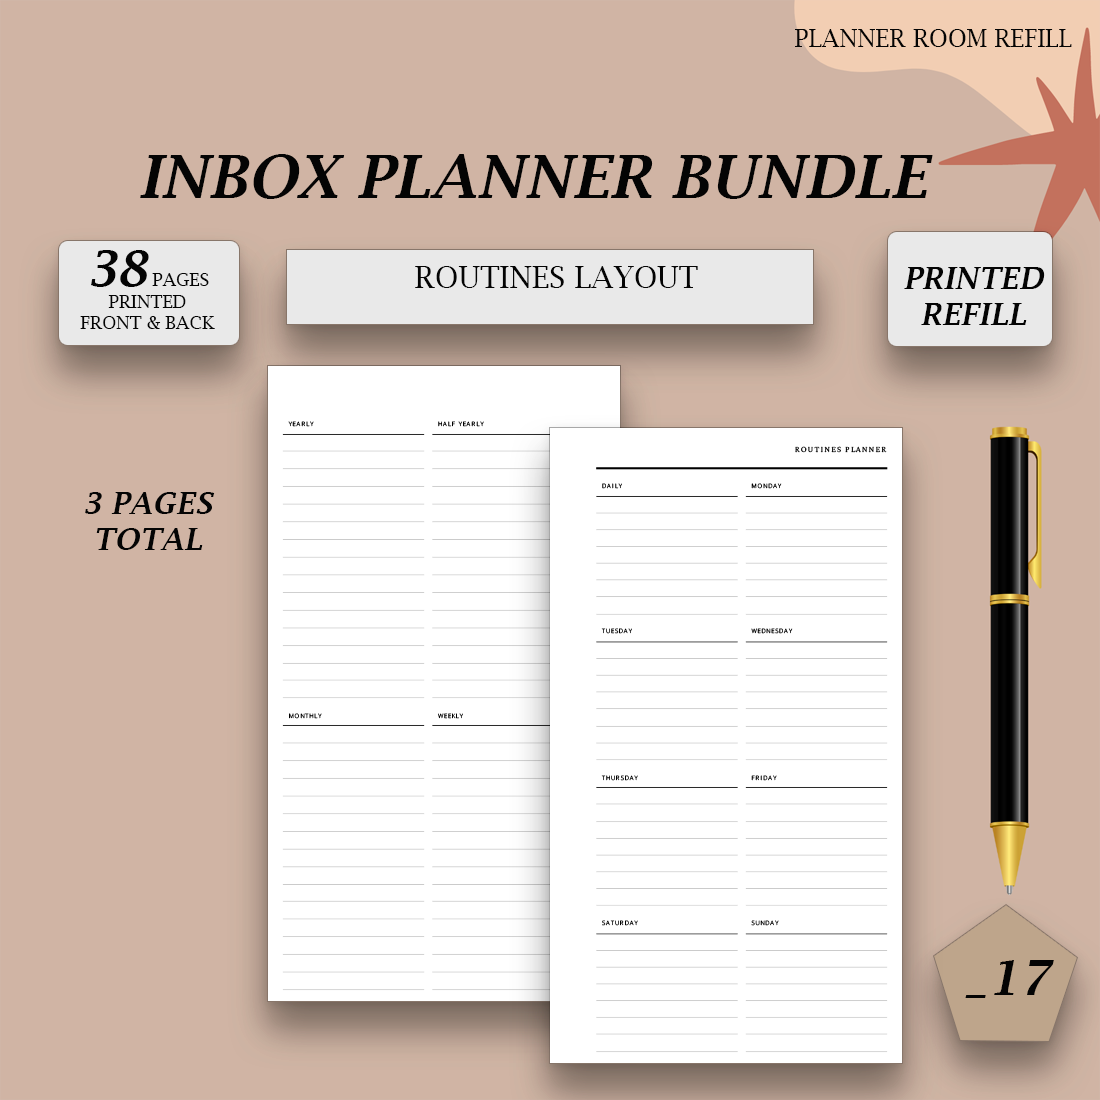 PRINTED Inbox planner bundle